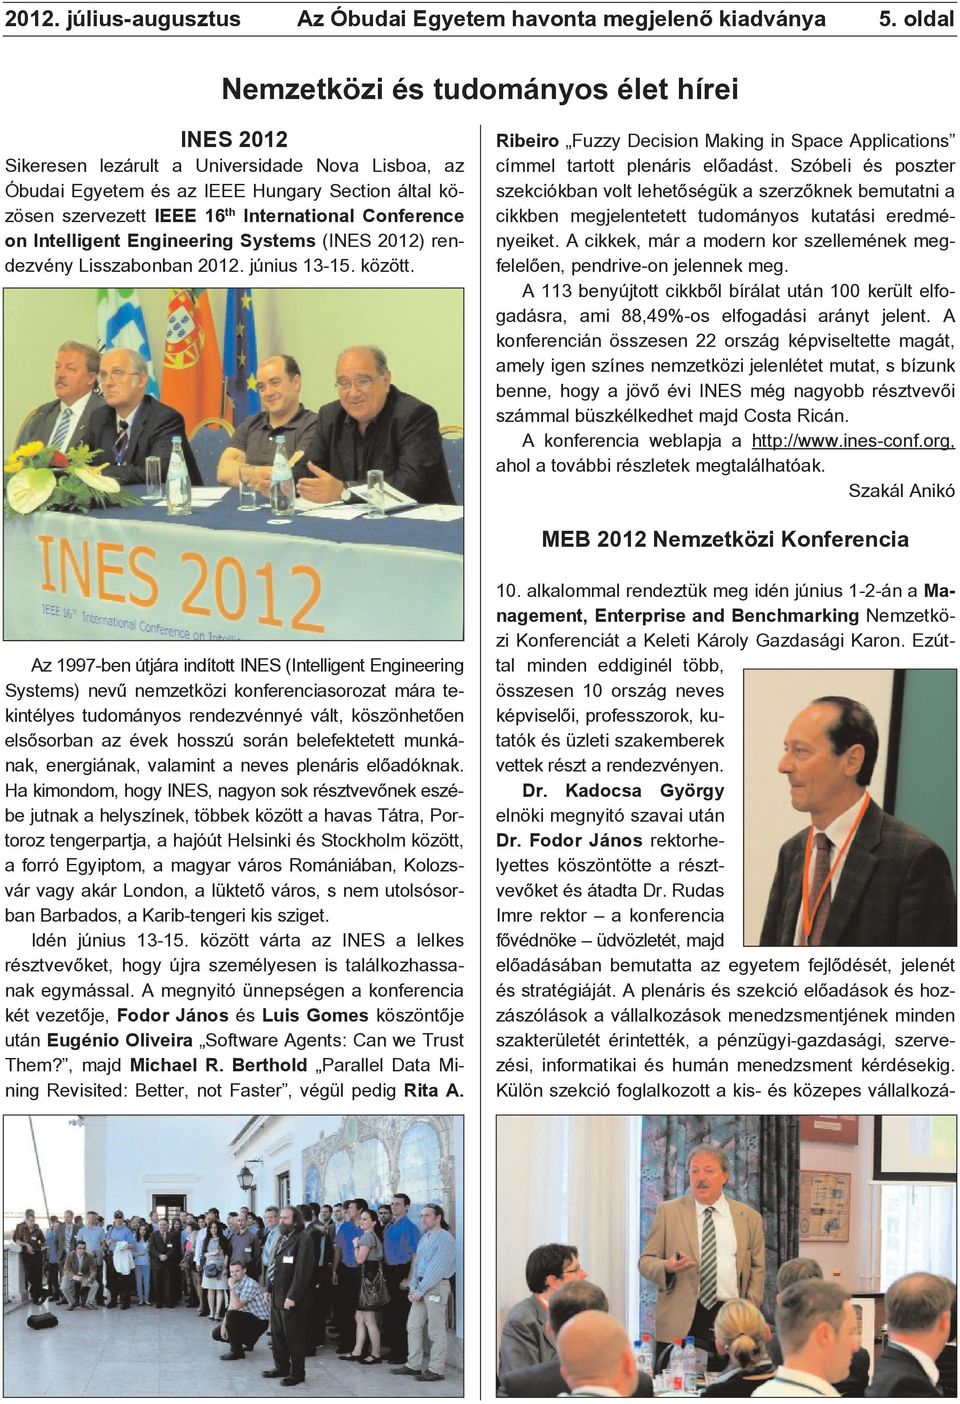 Conference on Intelligent Engineering Systems (INES 2012) rendezvény Lisszabonban 2012. június 13-15. között. Ribeiro Fuzzy Decision Making in Space Applications címmel tartott plenáris elõadást.